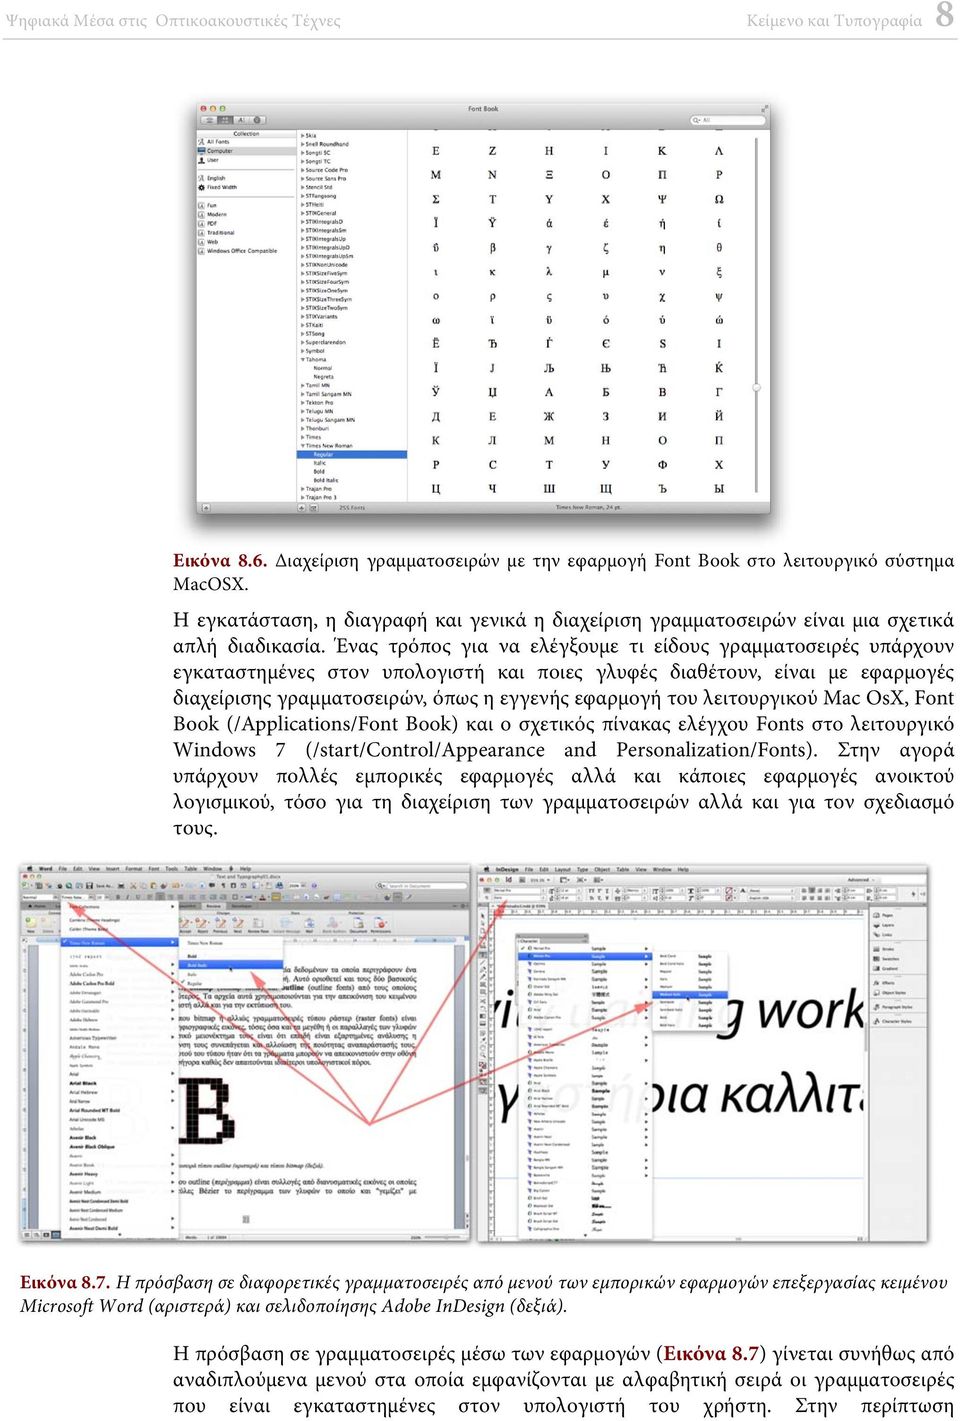 λειτουργικού Mac OsX, Font Book (/Applications/Font Book) και ο σχετικός πίνακας ελέγχου Fonts στο λειτουργικό Windows 7 (/start/control/appearance and Personalization/Fonts).